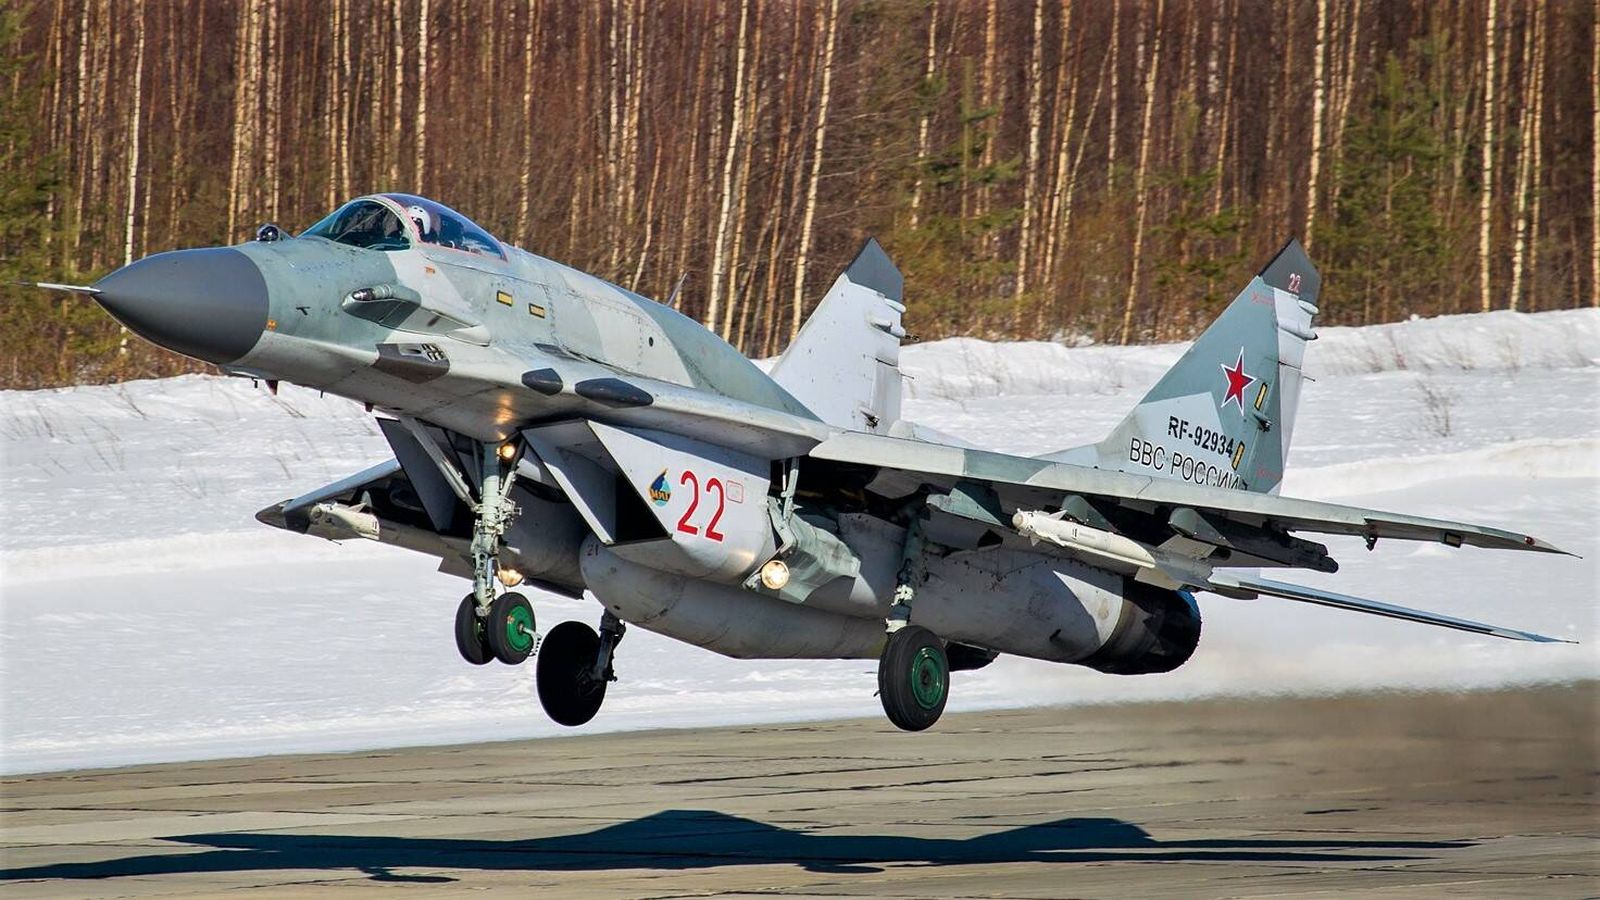 Mikoyan-Gurevich MiG-29SMT de la fuerza aérea rusa. (Alex Beltyukov)